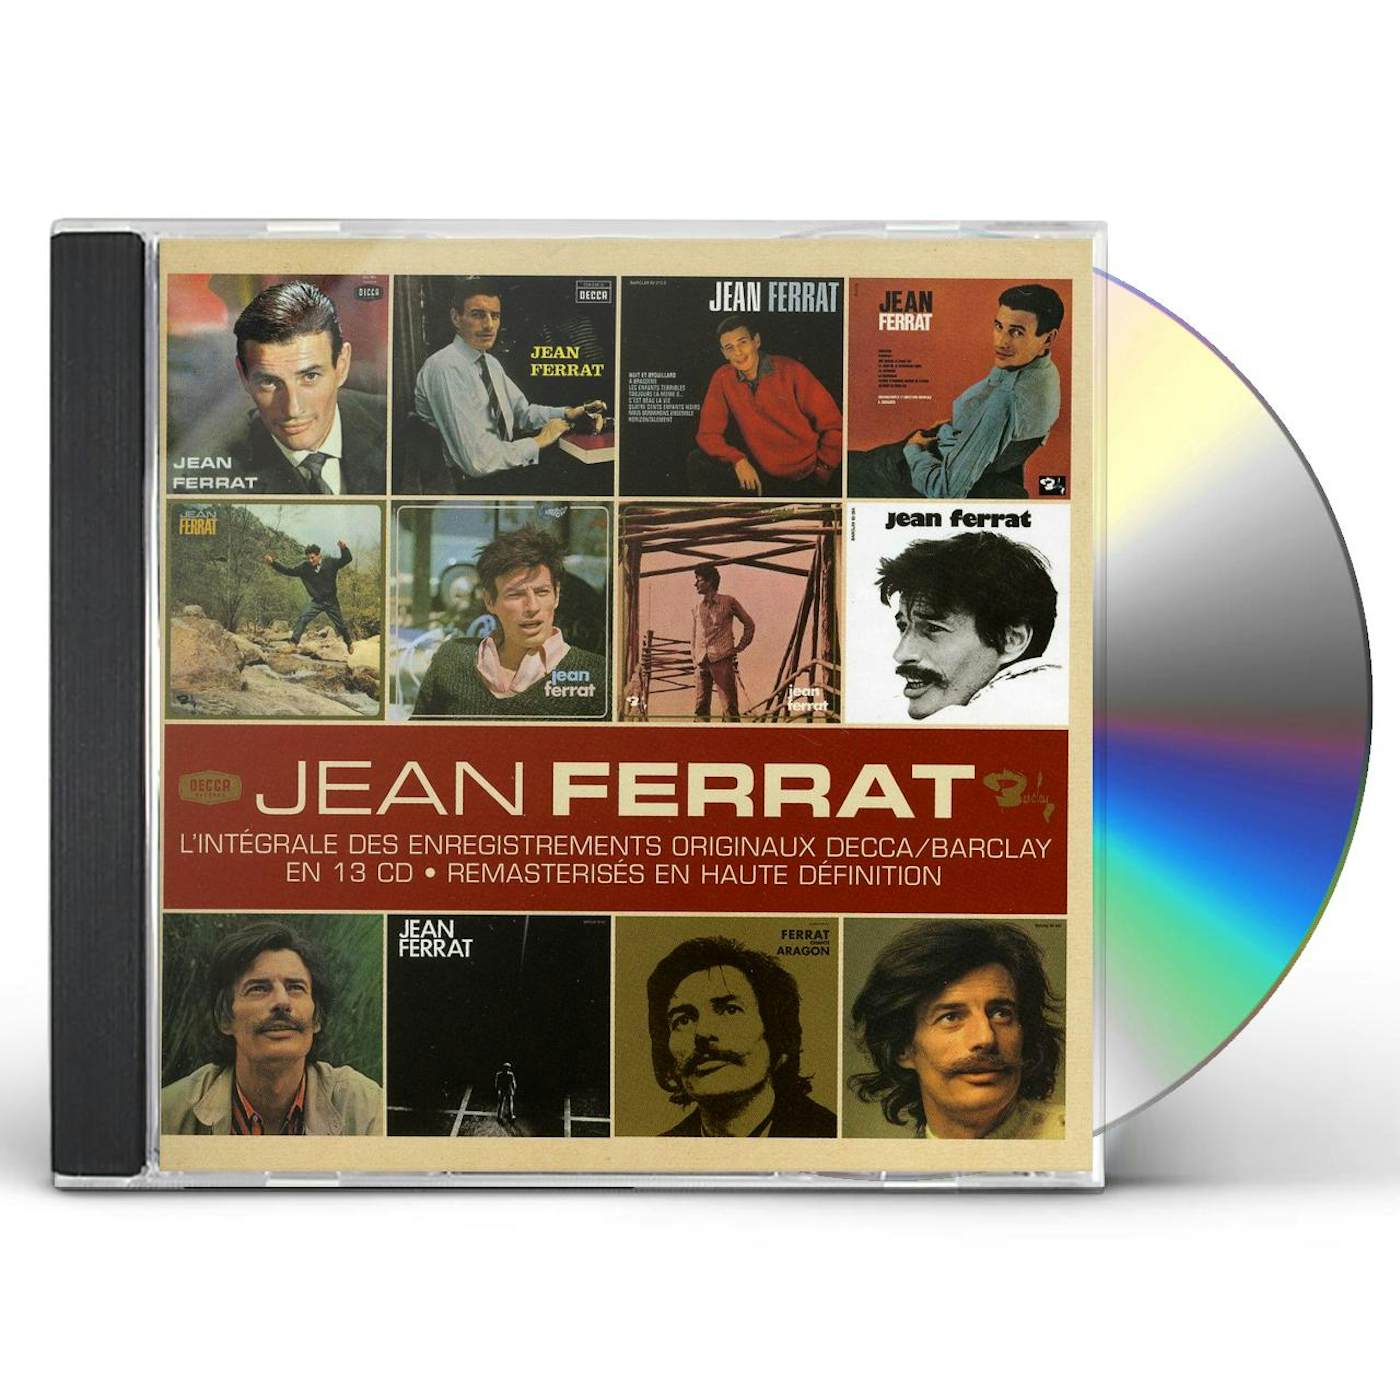 Jean Ferrat L'INTEGRALE DES ENREGISTREMENTS ORIGINAUX DECCA CD